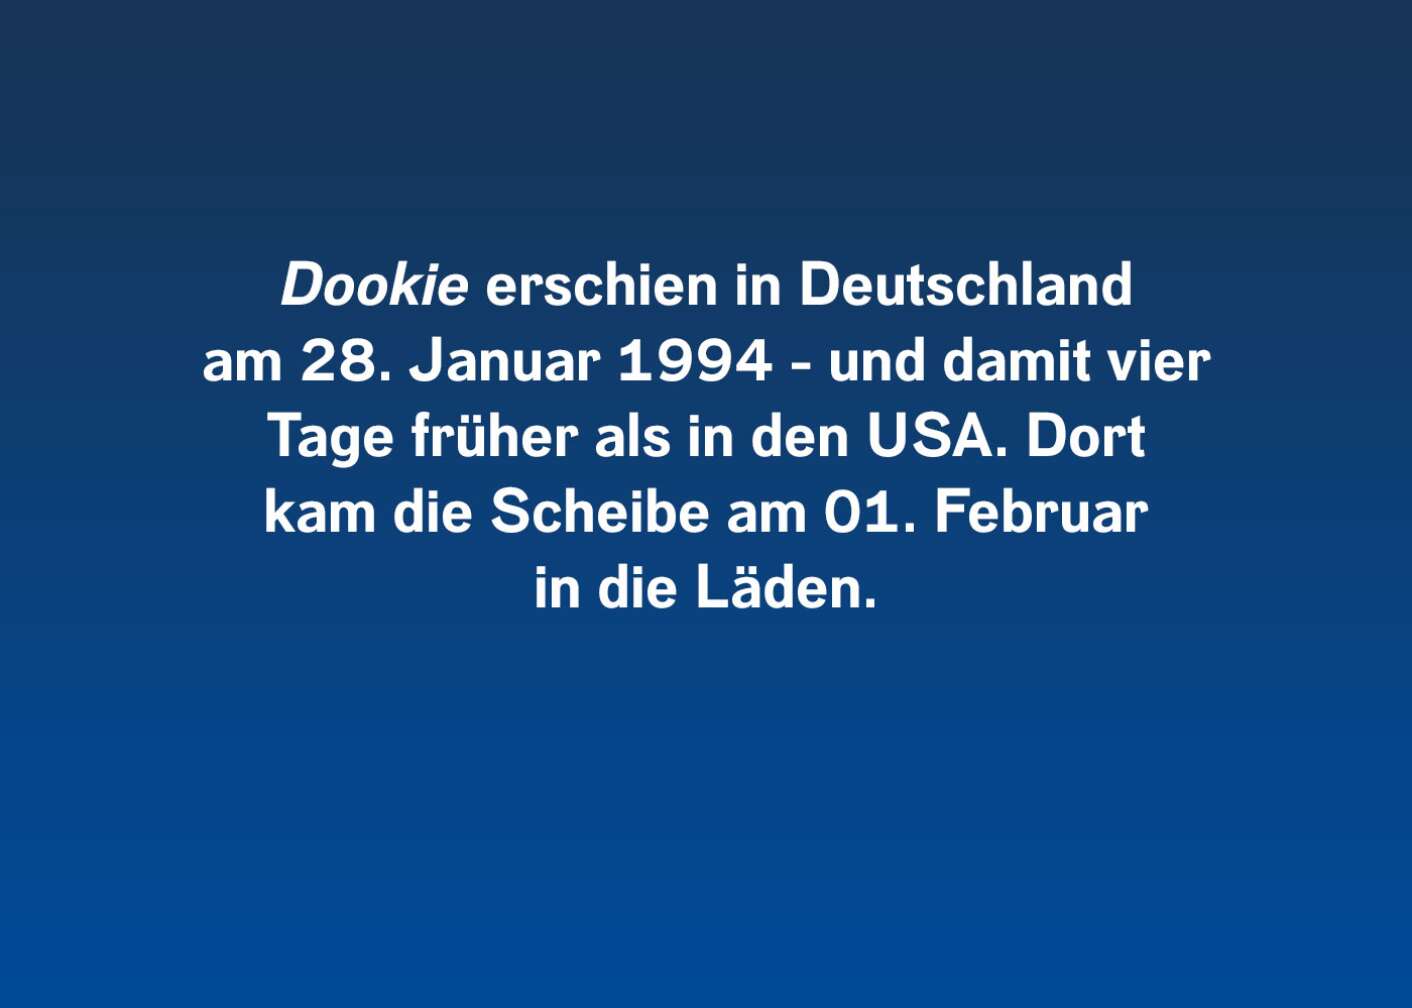 "Dookie" erschien in Deutschland am 28. Januar 1994 und damit vier Tage früher als in den USA. Dort kam die Scheibe am 01. Februar in die Läden.